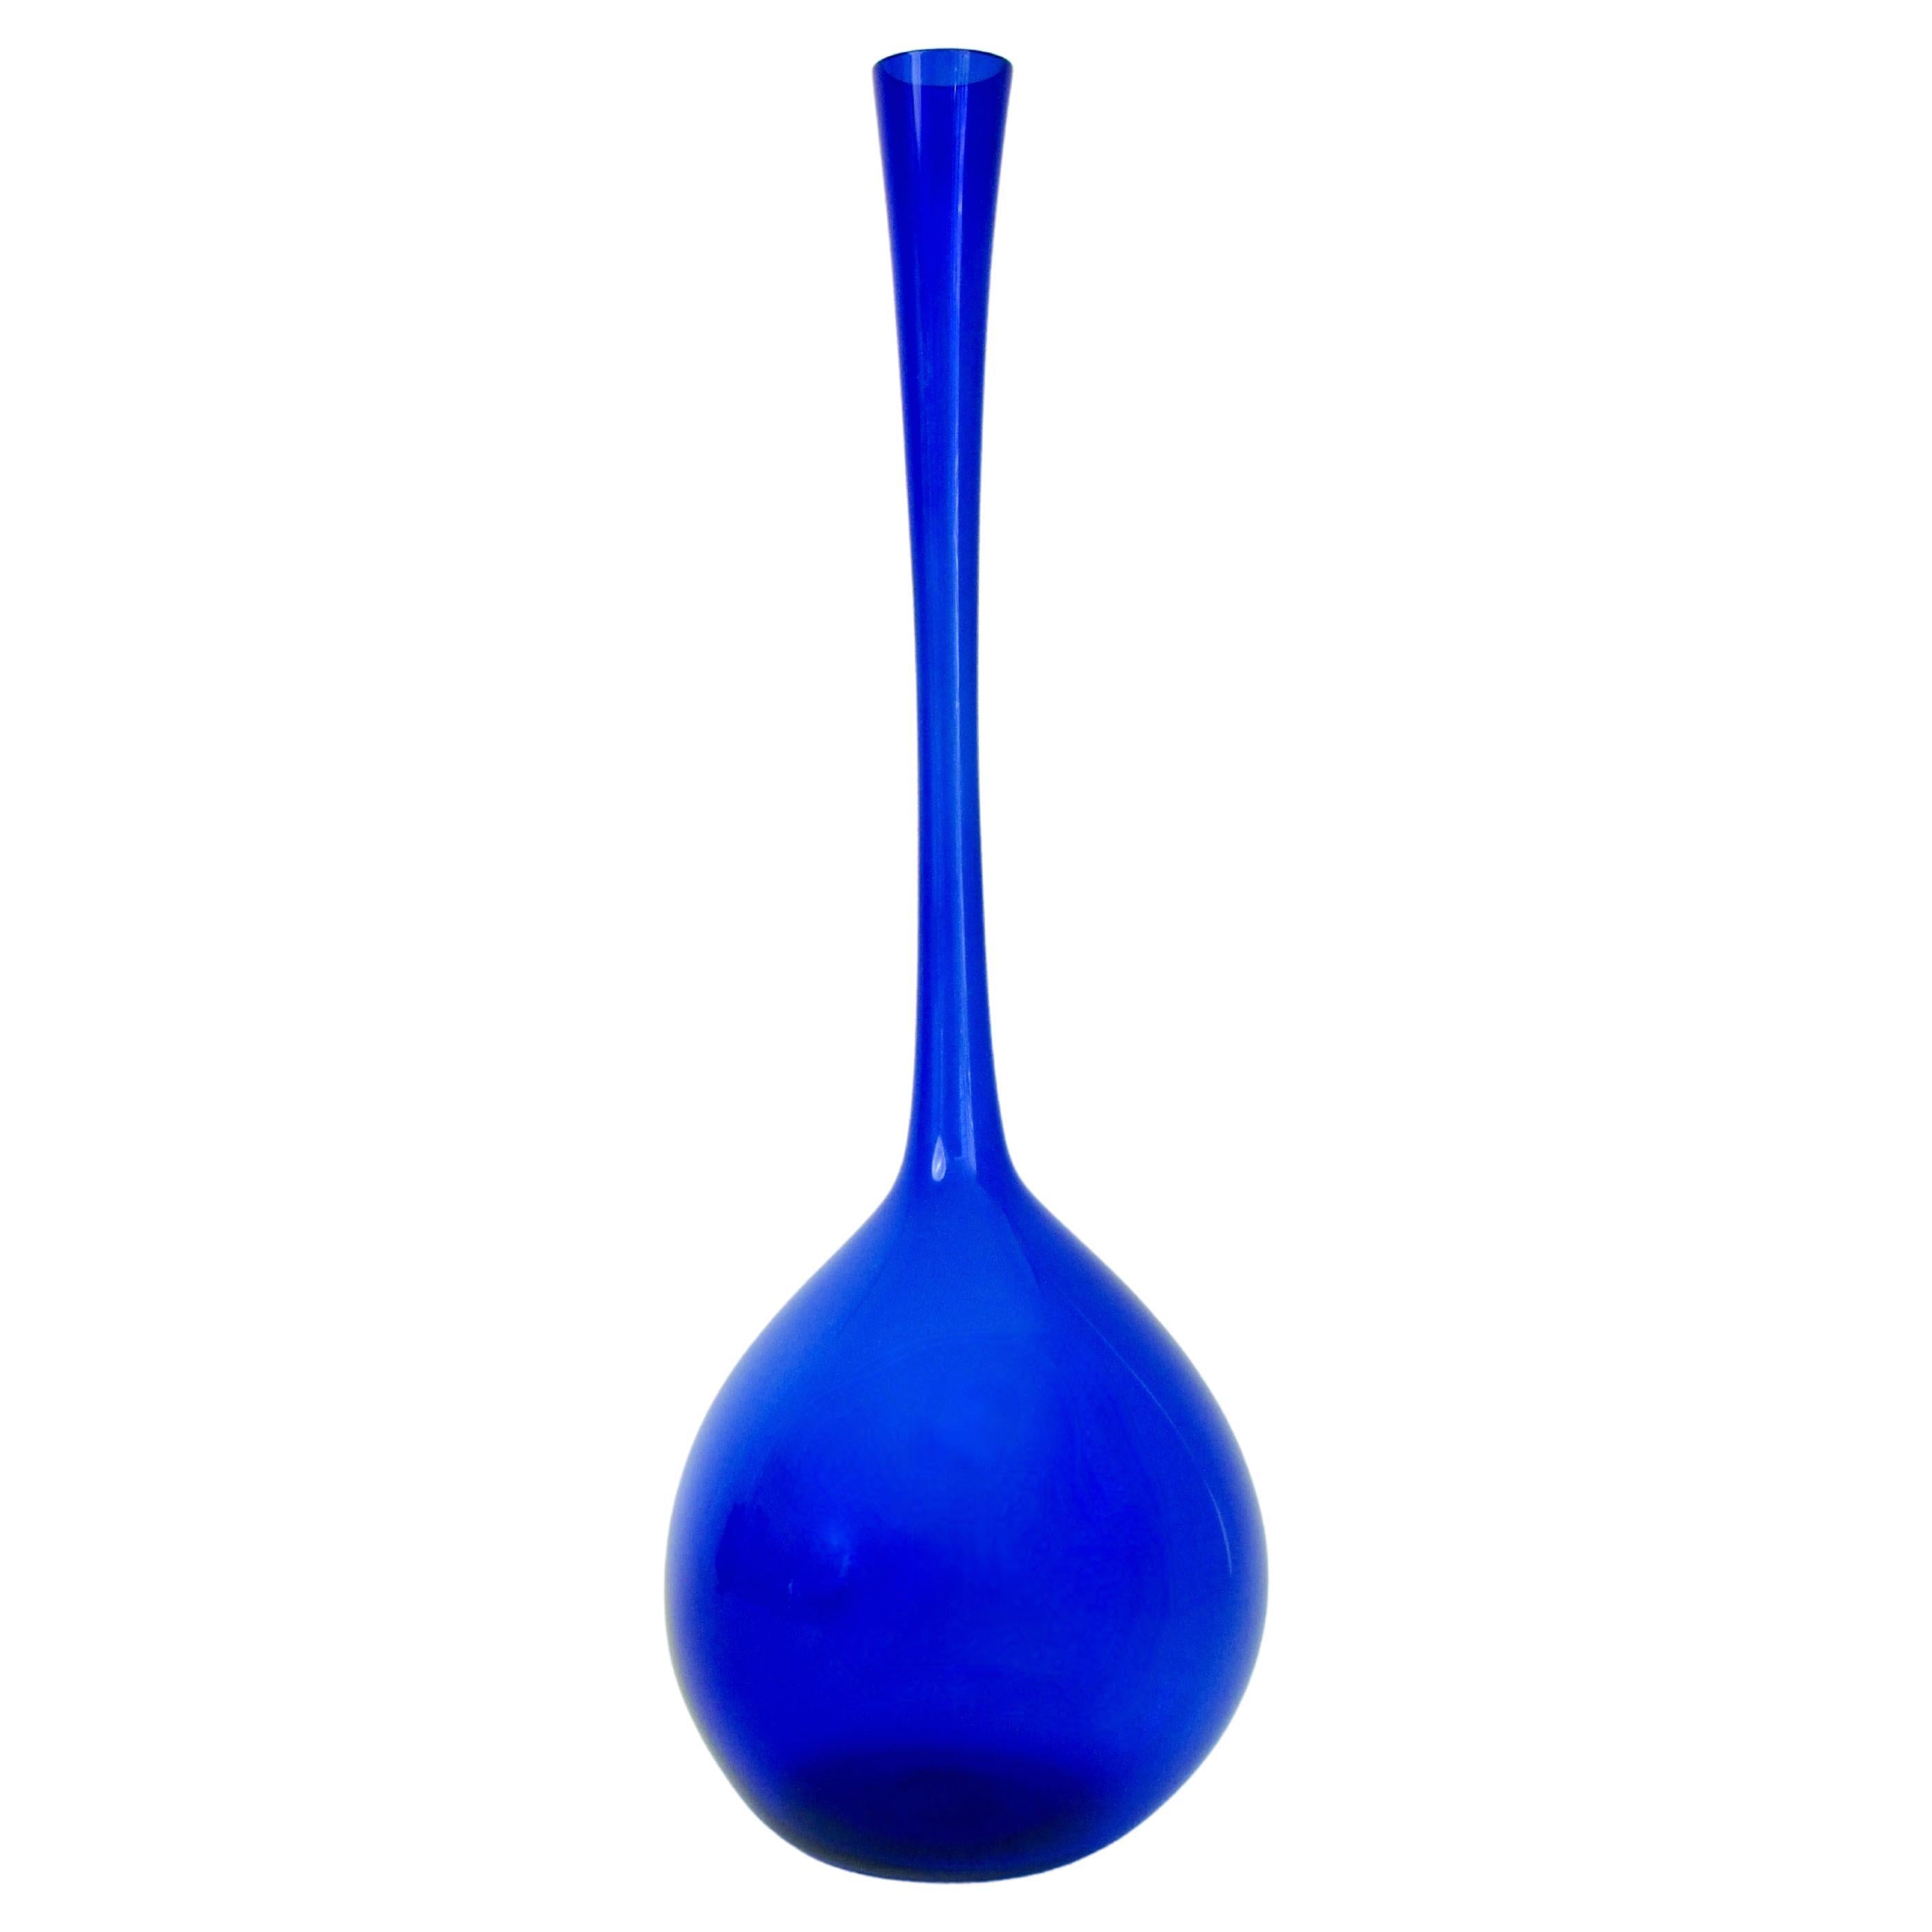 Blaue Arthur Percy für Gullaskruf Schwedische Glasflaschenvase mit bauchigem Sockel